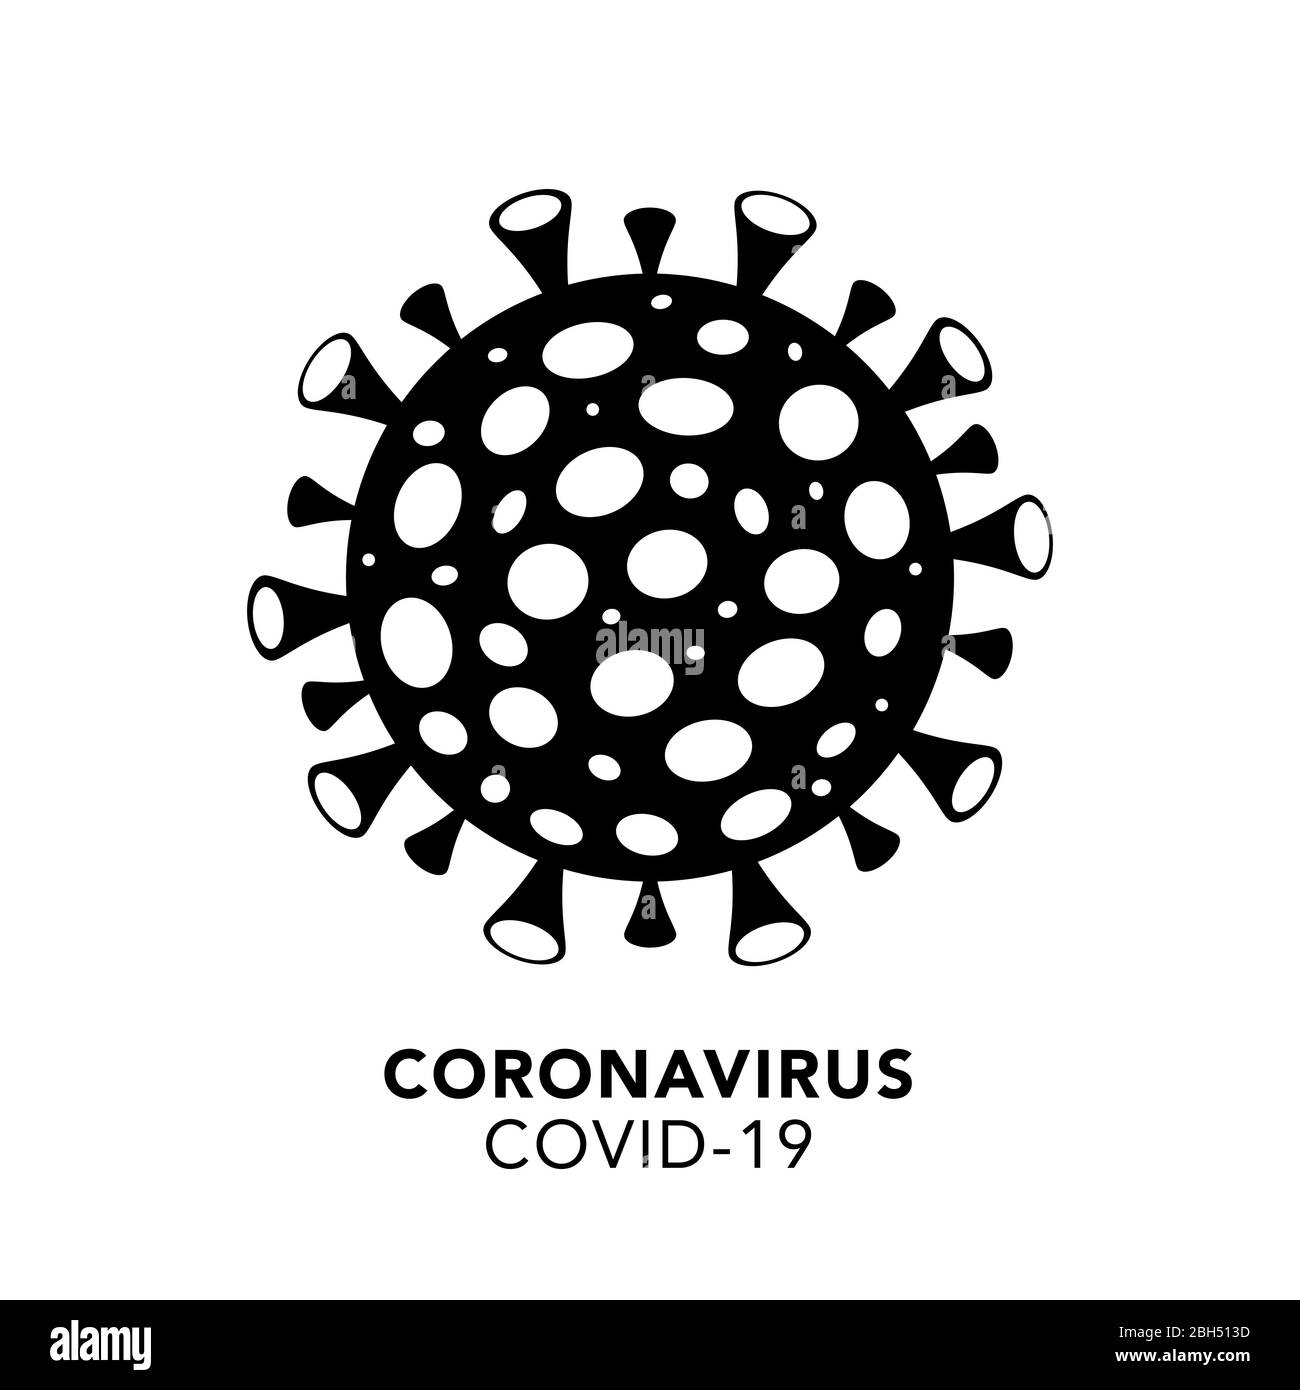 Schwarze Silhouette der Coronavirus-Bakterienzelle Icon, COVID -19 auf weißem Hintergrund. Isoliertes Objekt. Weltweites Pandemiekonzept Stock Vektor